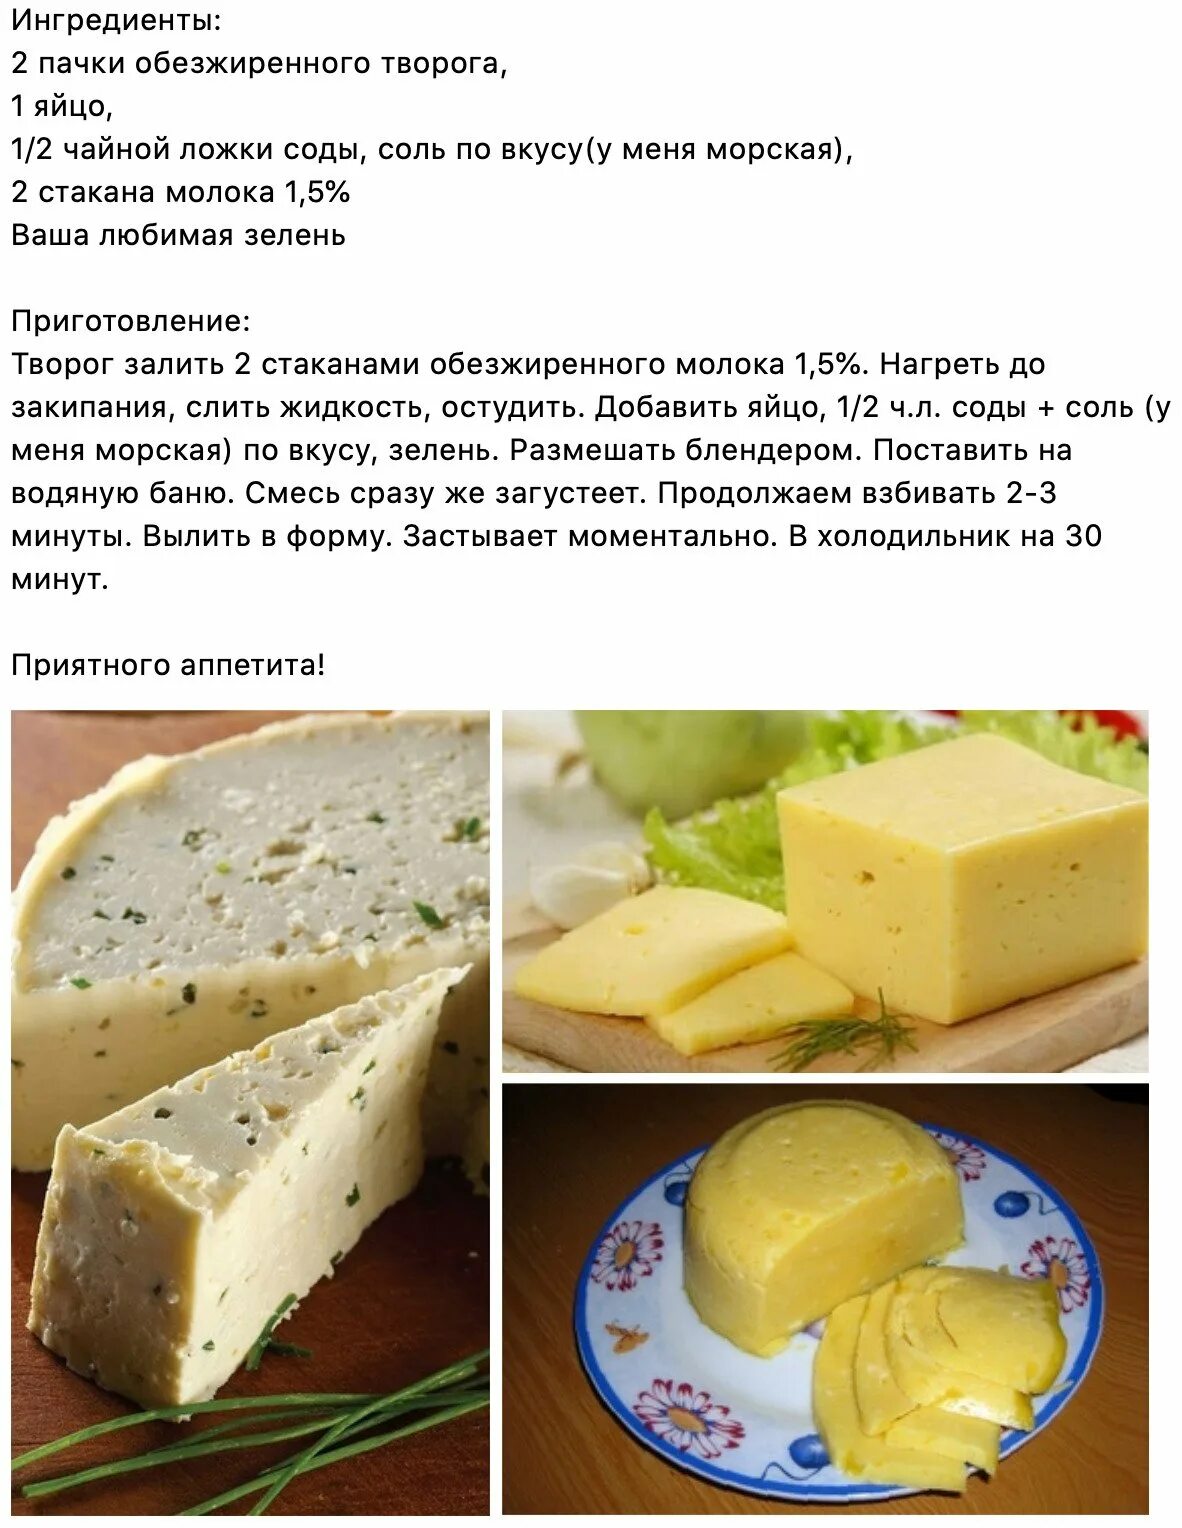 Рецепт домашнего сыра. Домашний сыр. Домашний сыр из молока рецепт. Рецепт домашнего сыра из молока. Домашний сыр просто вкусно